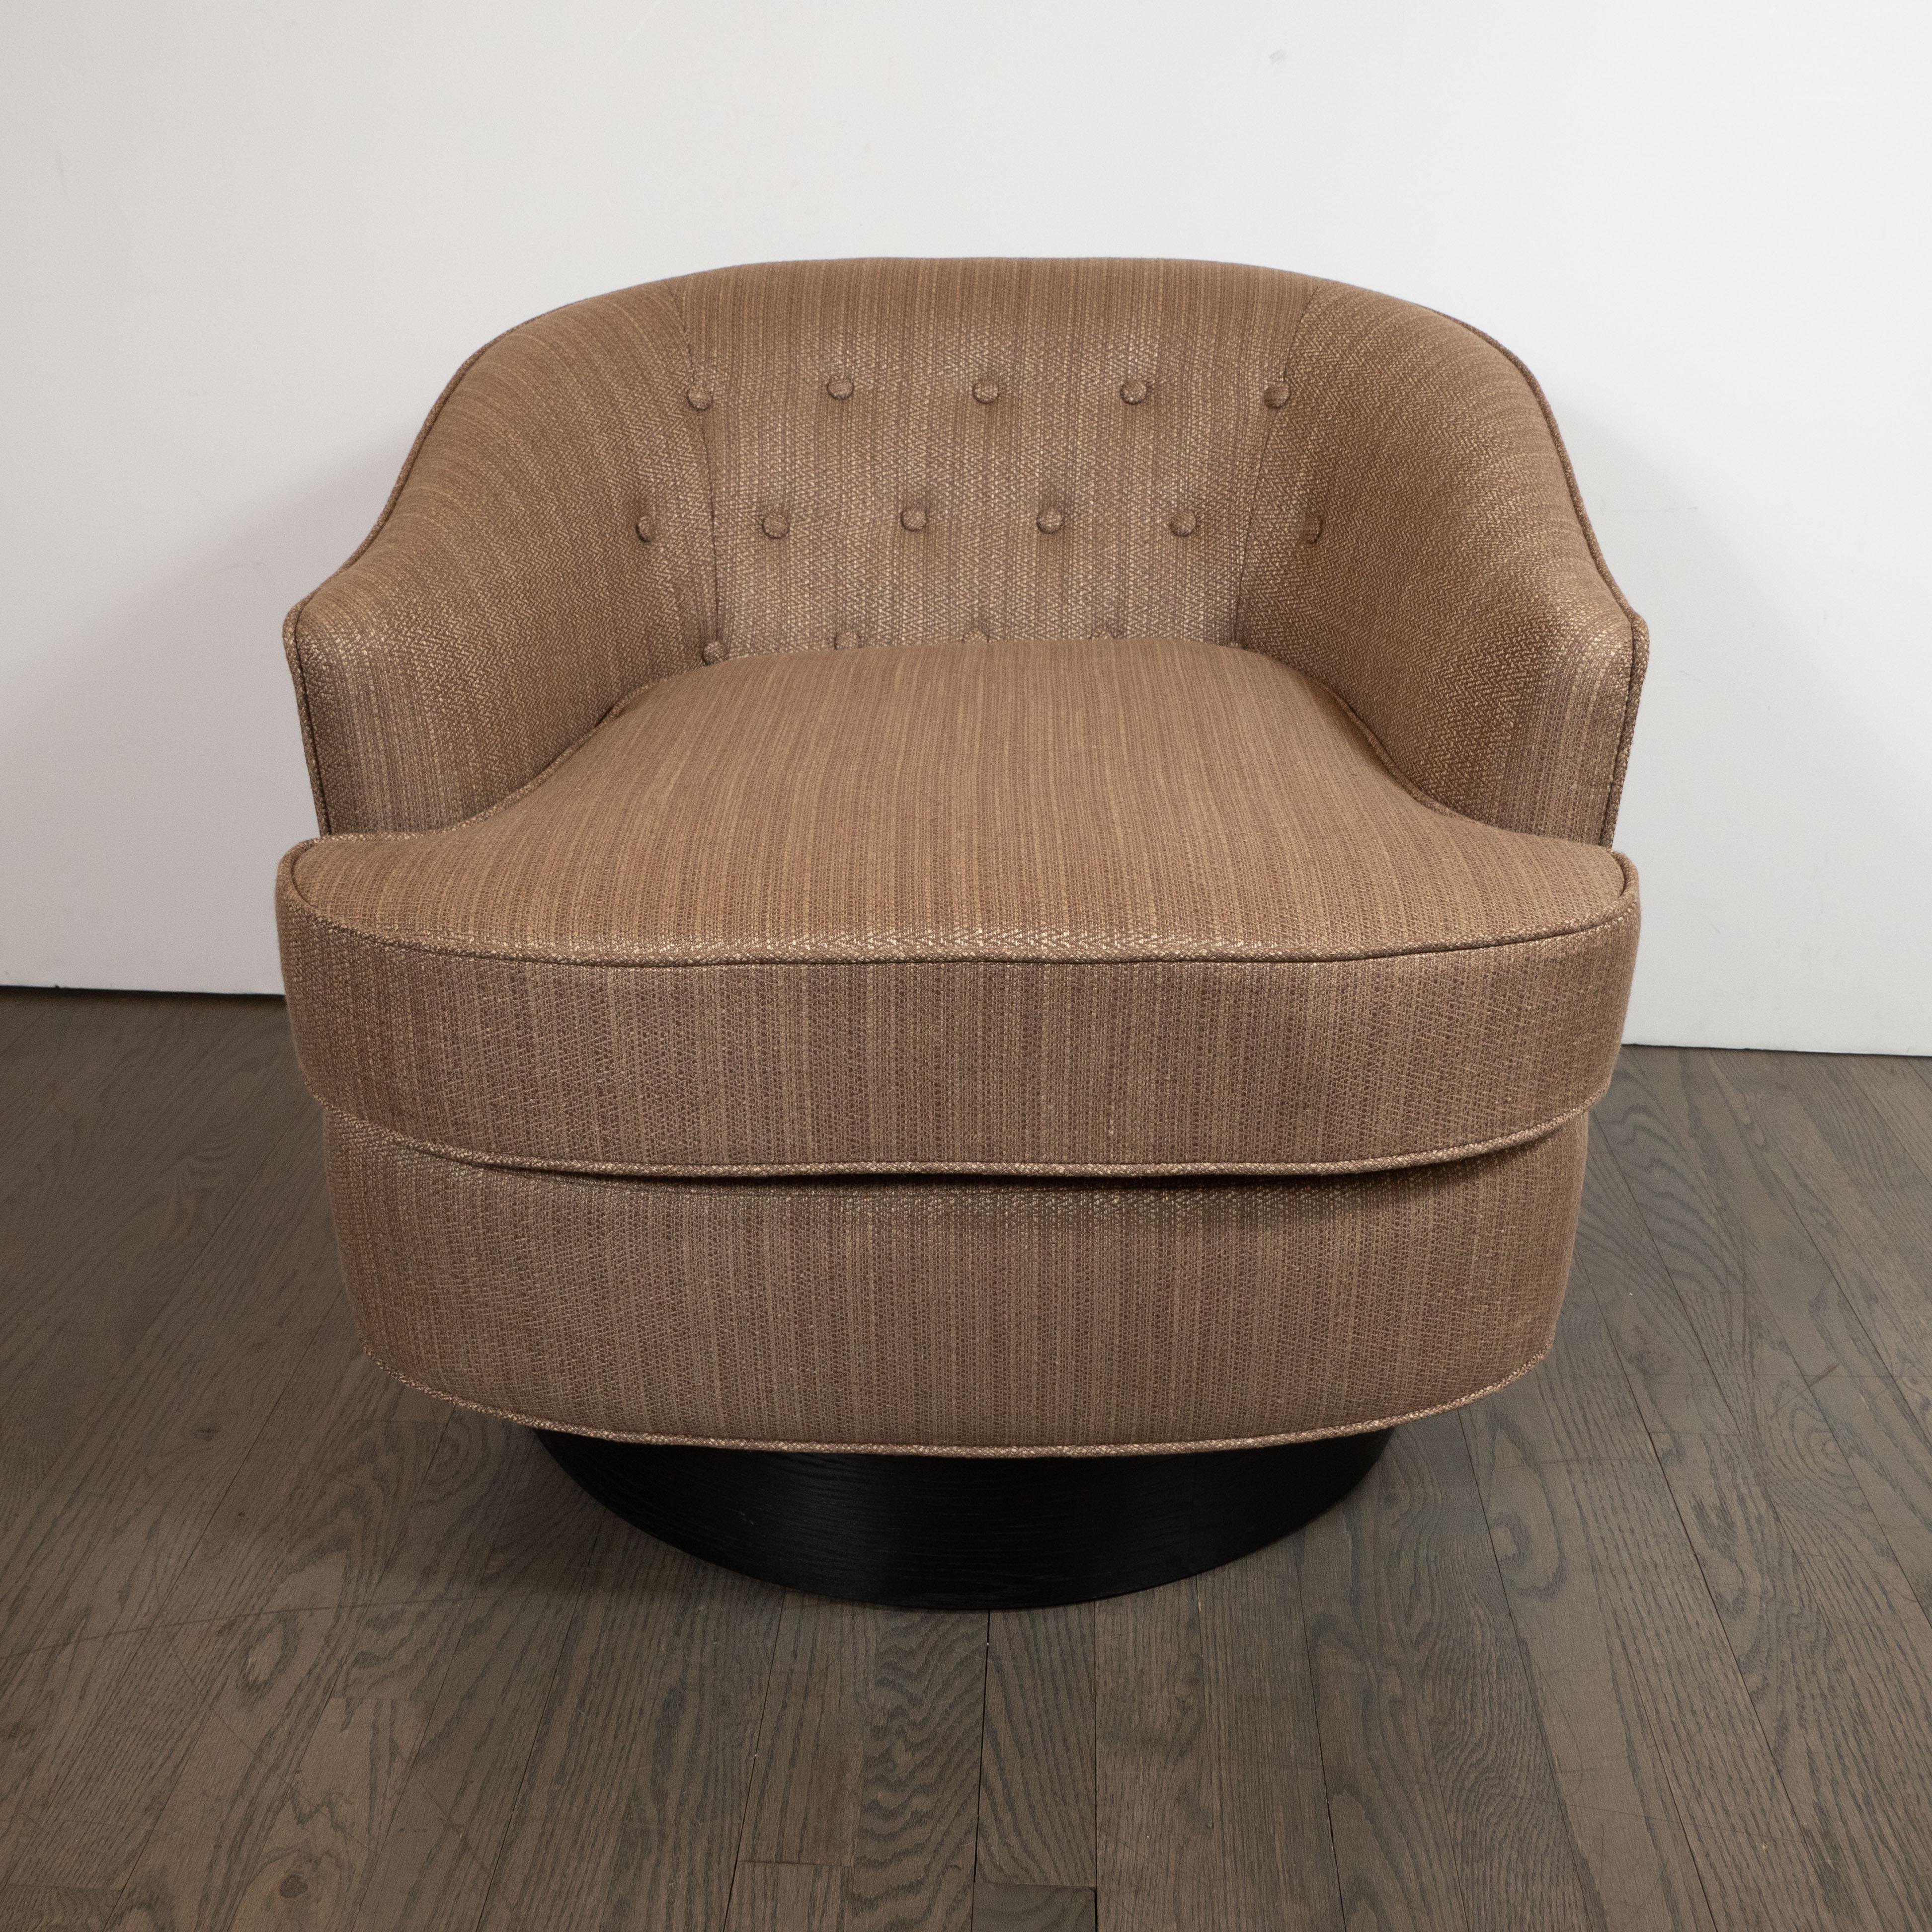 Dieser raffinierte Mid-Century Modern Stuhl wurde um 1960 in den Vereinigten Staaten hergestellt. Er verfügt über eine geschwungene Rückenlehne mit Knöpfen, sanft abfallende Armlehnen und eine äußerst bequeme, mit Schaumstoff umhüllte Daunen